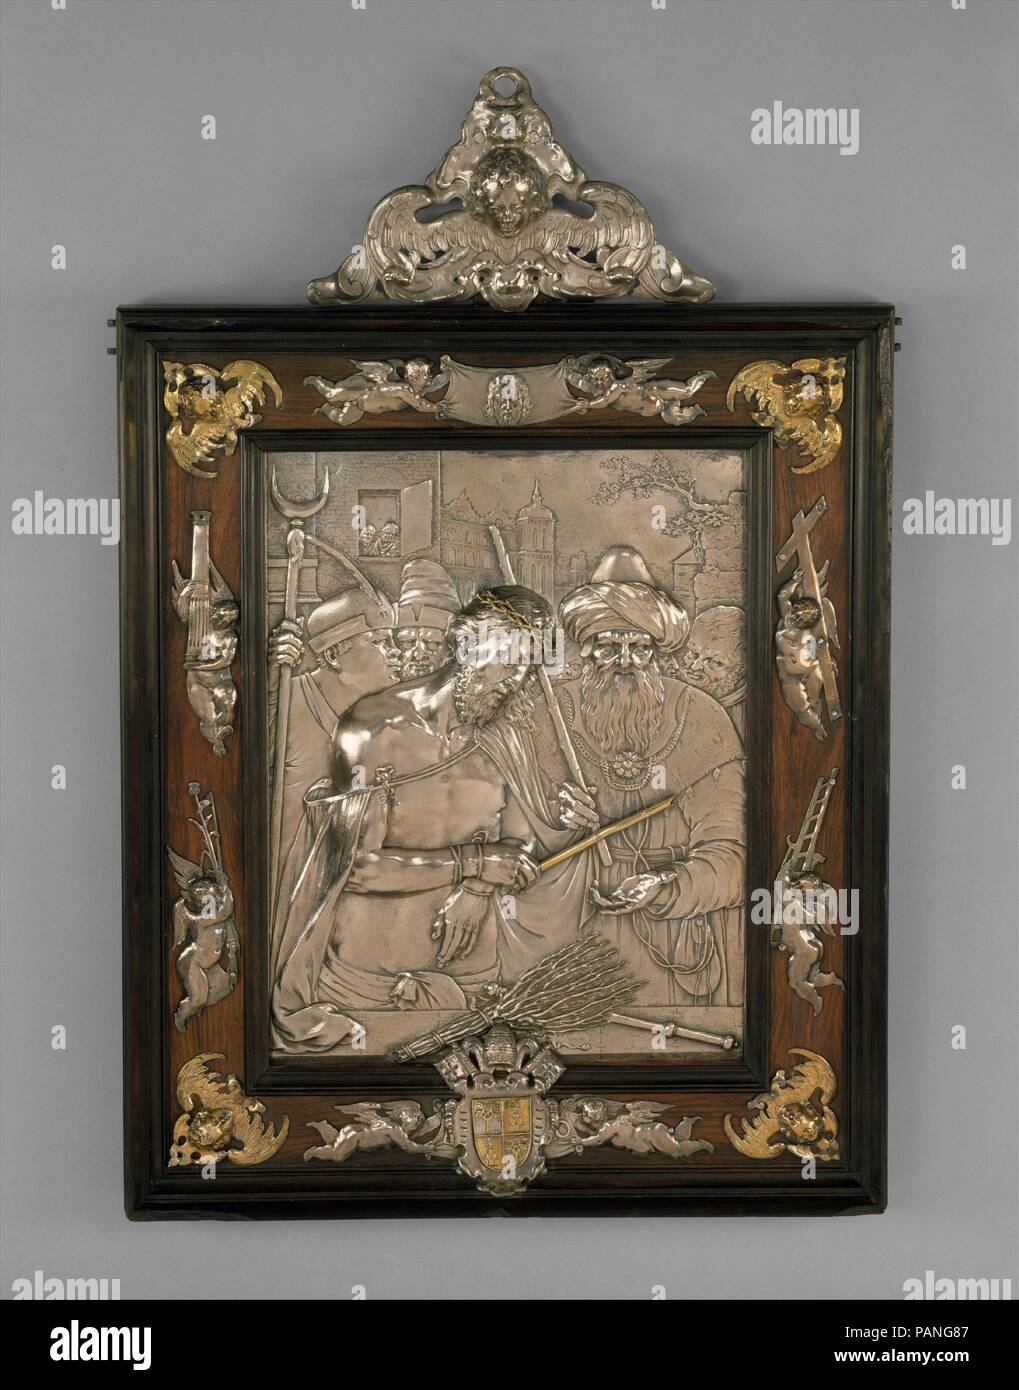 Ecce Homo. Artista: Anonimo, tedesco del xvii secolo. Cultura: tedesco, Augsburg. Dimensioni: complessiva (rilievo solo): H. 7 1/2 x W. 6 5/8 in. (19,1 x 16,8 cm); incorniciato (conferma): H. 17 3/8 x W. 11 3/4 x D. 1 1/2 in. (44.1 x 29.8 x 3.8 cm). Data: fine XVI-inizio XVII secolo. Un dipinto di composizione quasi identica è stato offerto in vendita a Parigi, chiamato 'Ecole Arendonk vers 1580', descritto come pannello di quercia, marcata sulla retromarcia con il marchio del pannello di Anversa-makers' Guild e il marchio del pannello-maker (non identificato). Museo: Metropolitan Museum of Art di New York, Stati Uniti d'America. Foto Stock